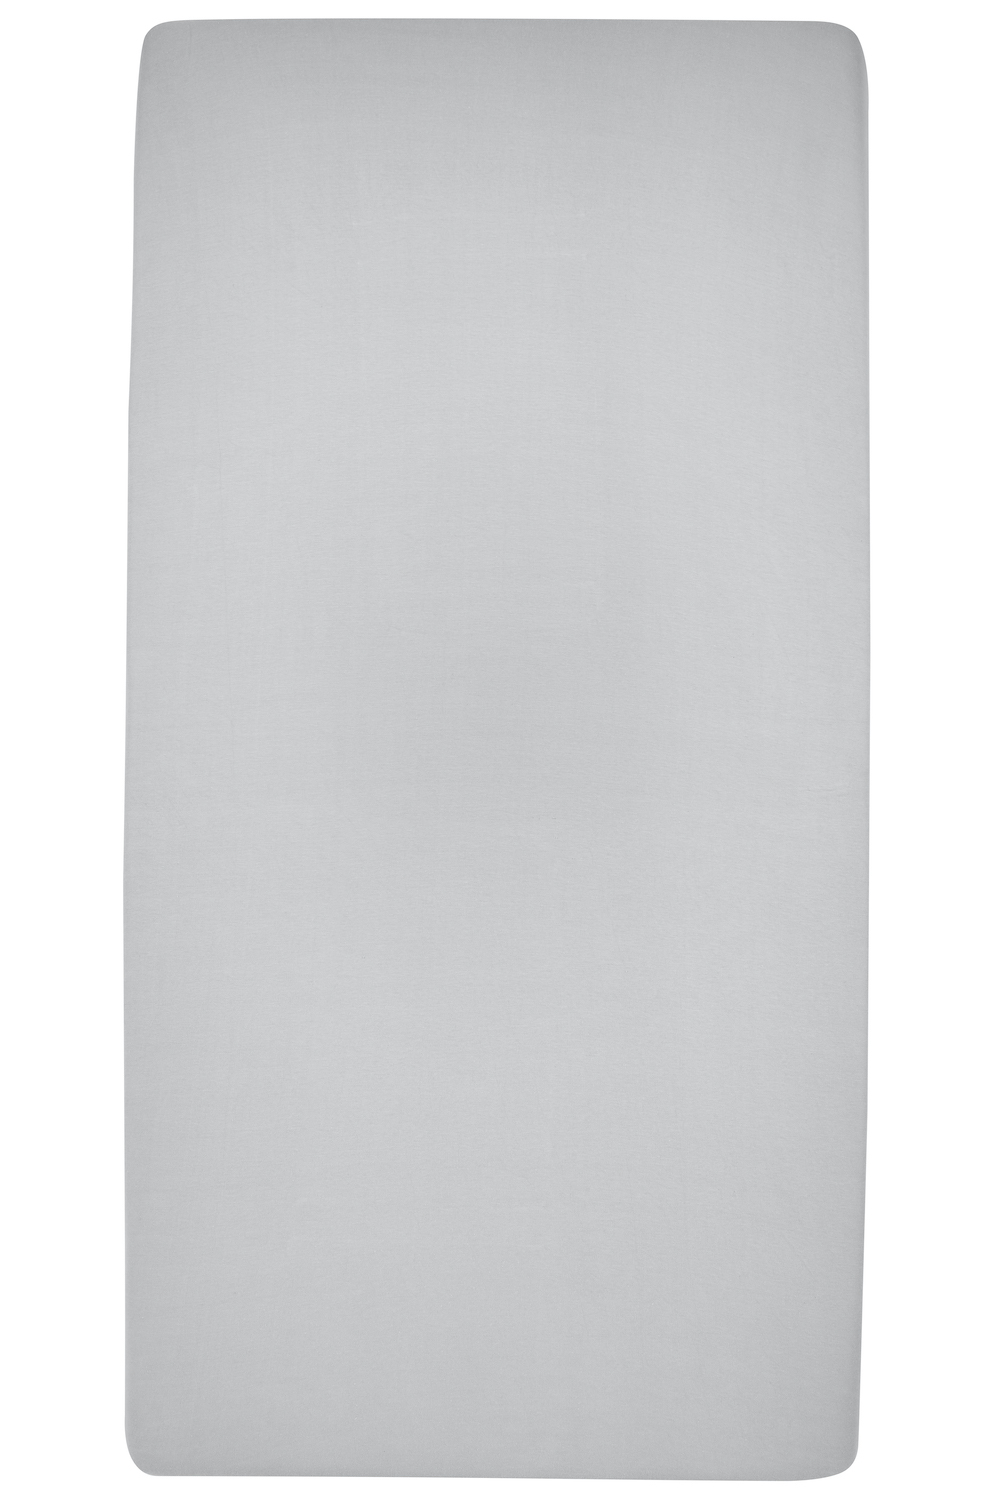 Hoeslaken tweepersoons Uni - light grey - 160x200cm